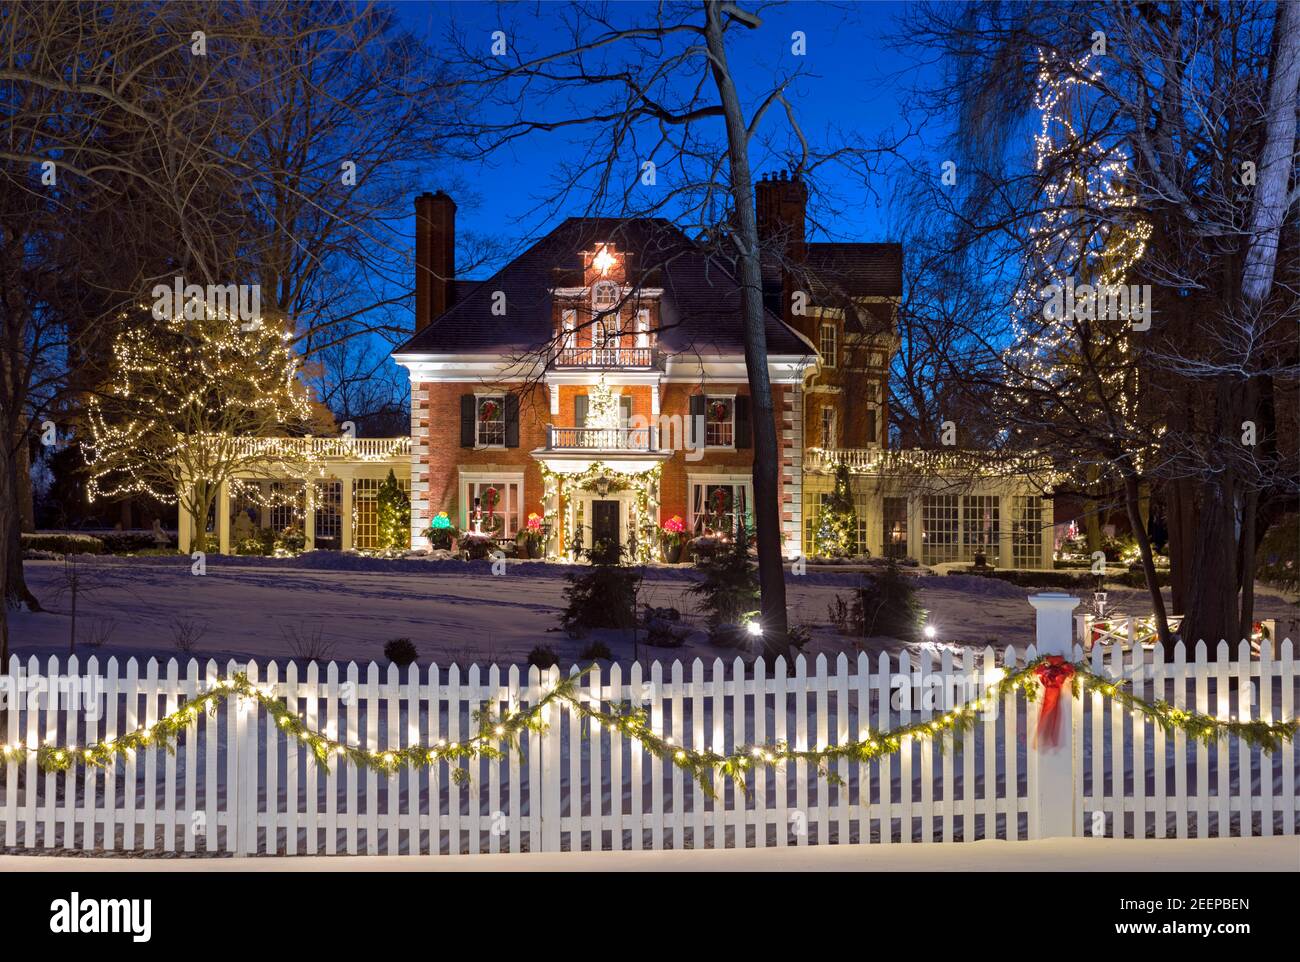 Ein historisches Backsteinhaus aus den 1840er Jahren, dekoriert für Weihnachten in einer verschneiten Winterkulisse, weißem Pfahlzaun und weihnachtsbeleuchtung in der Abenddämmerung Stockfoto